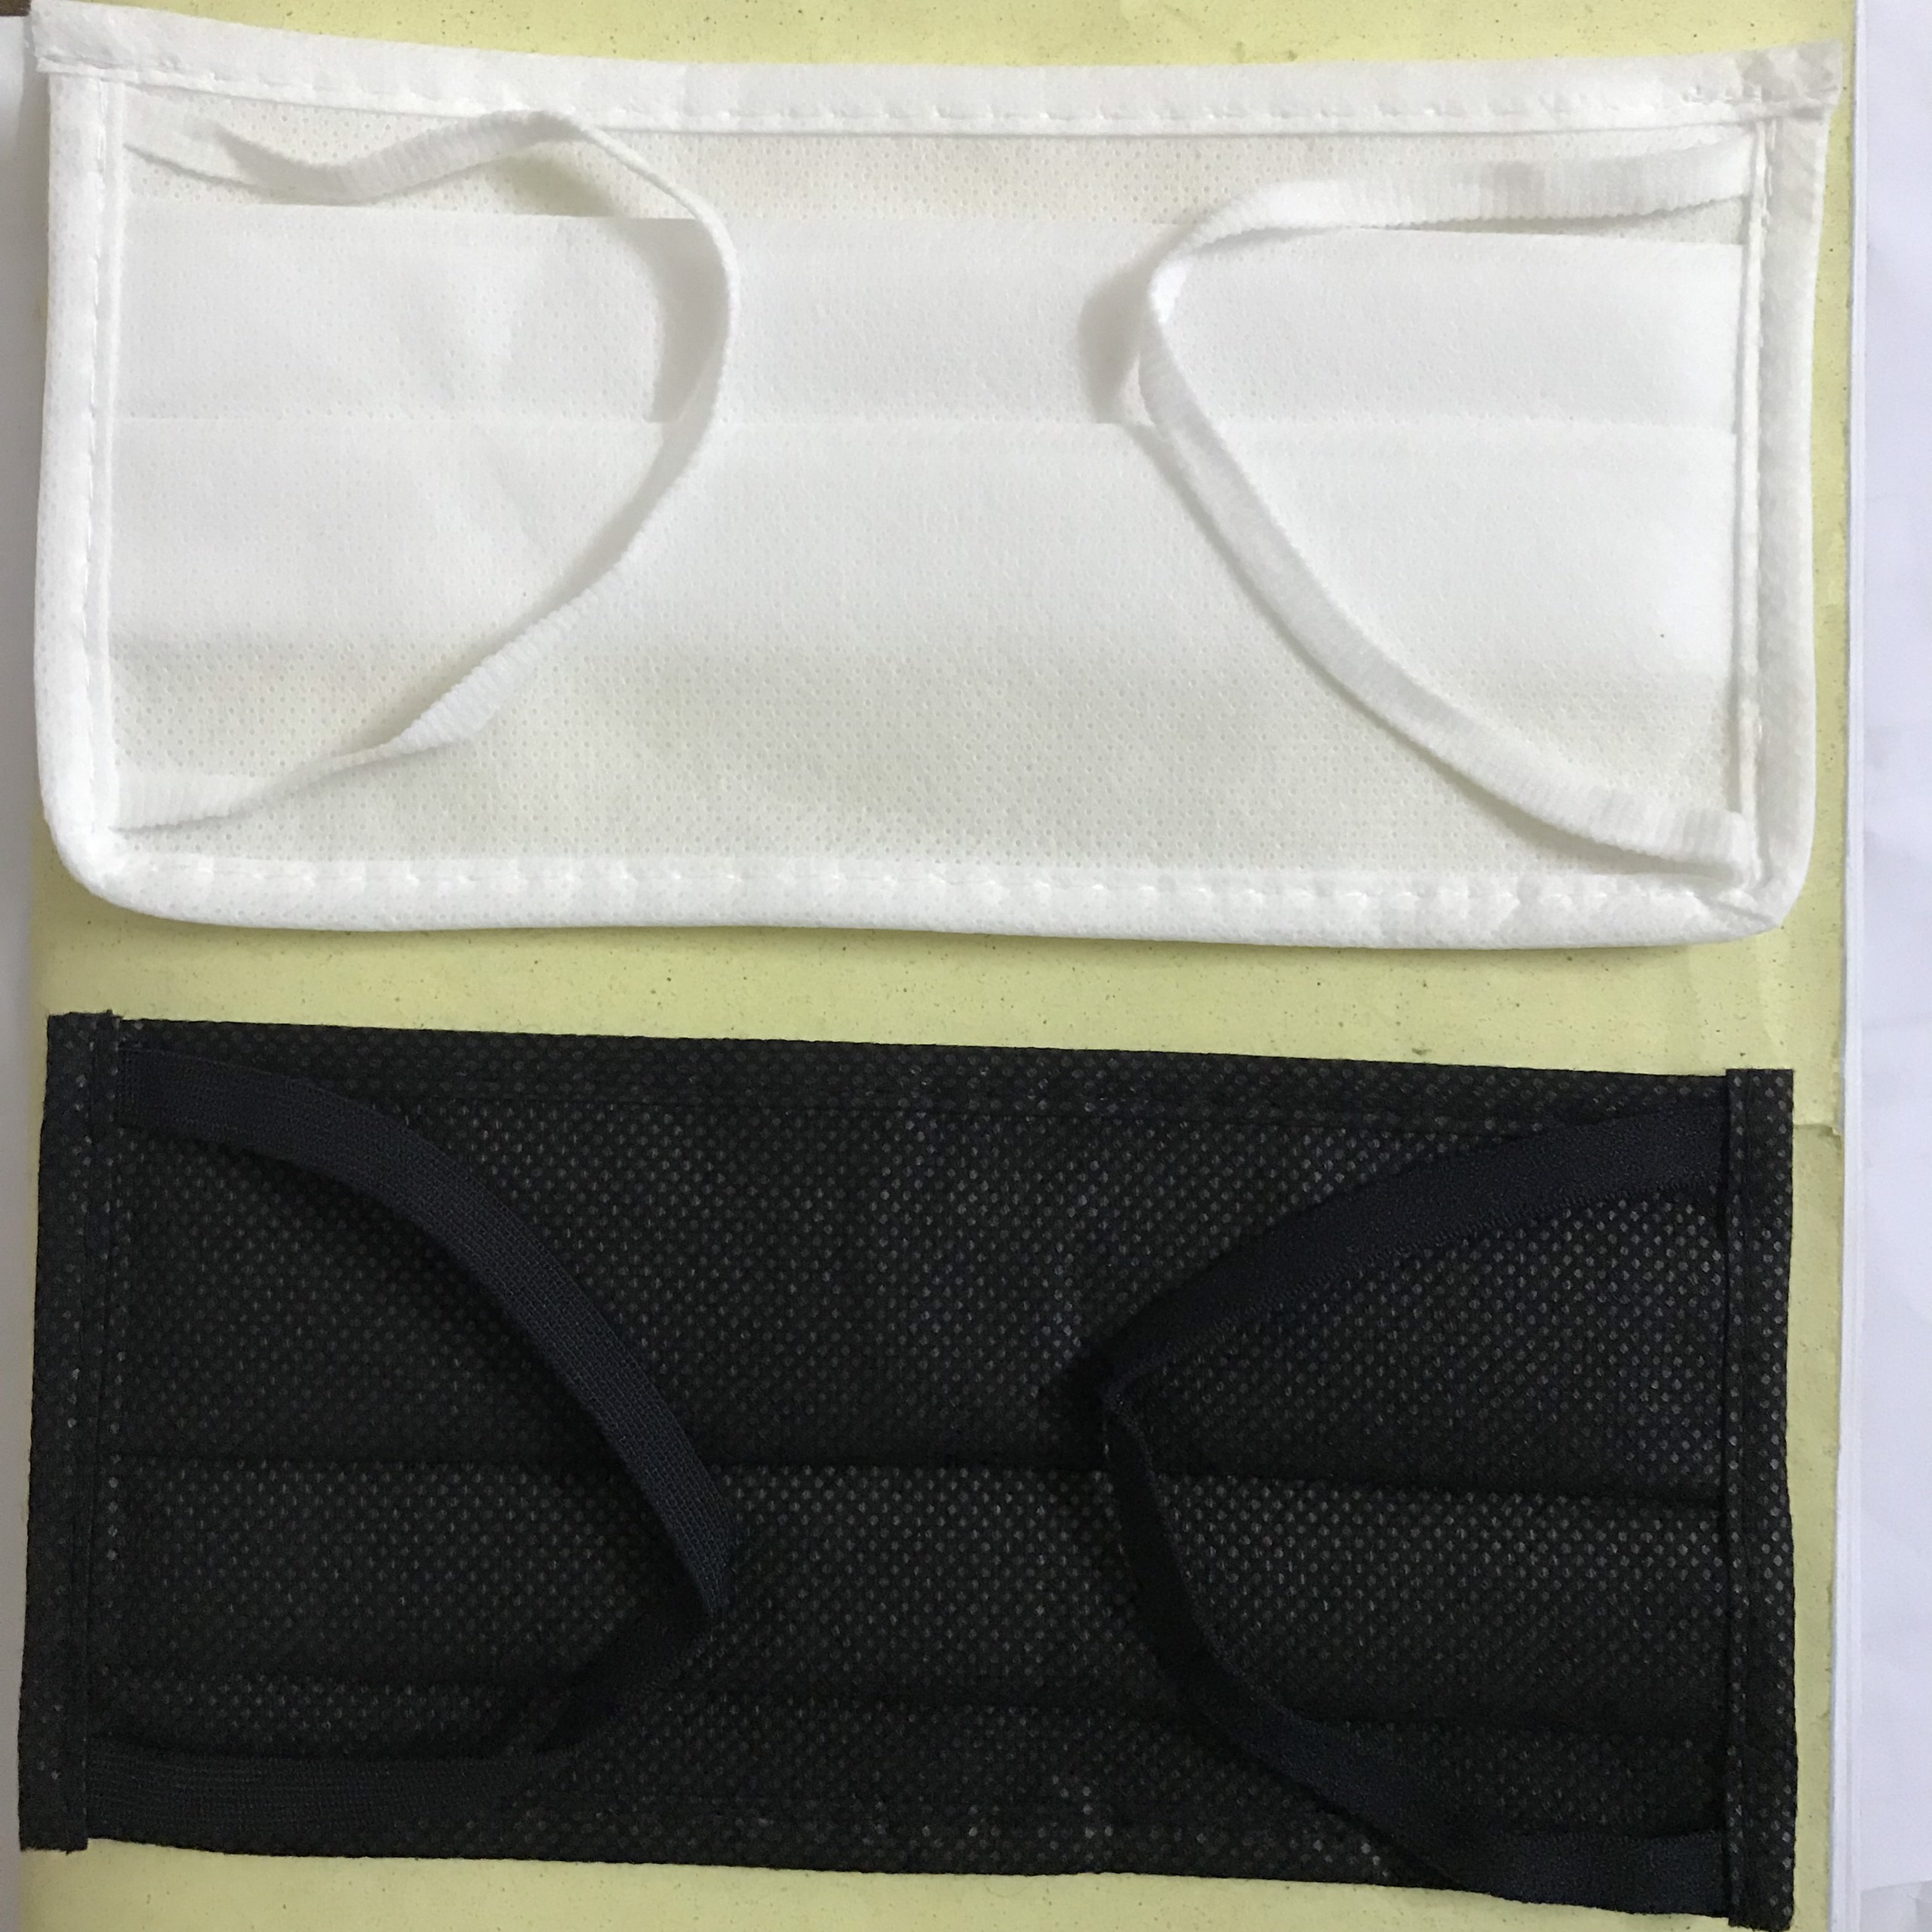 Khẩu trang kháng bụi vải không dệt - túi 10 cái có thể tái sử sau khi giặt (giao màu ngẫu nhiên)